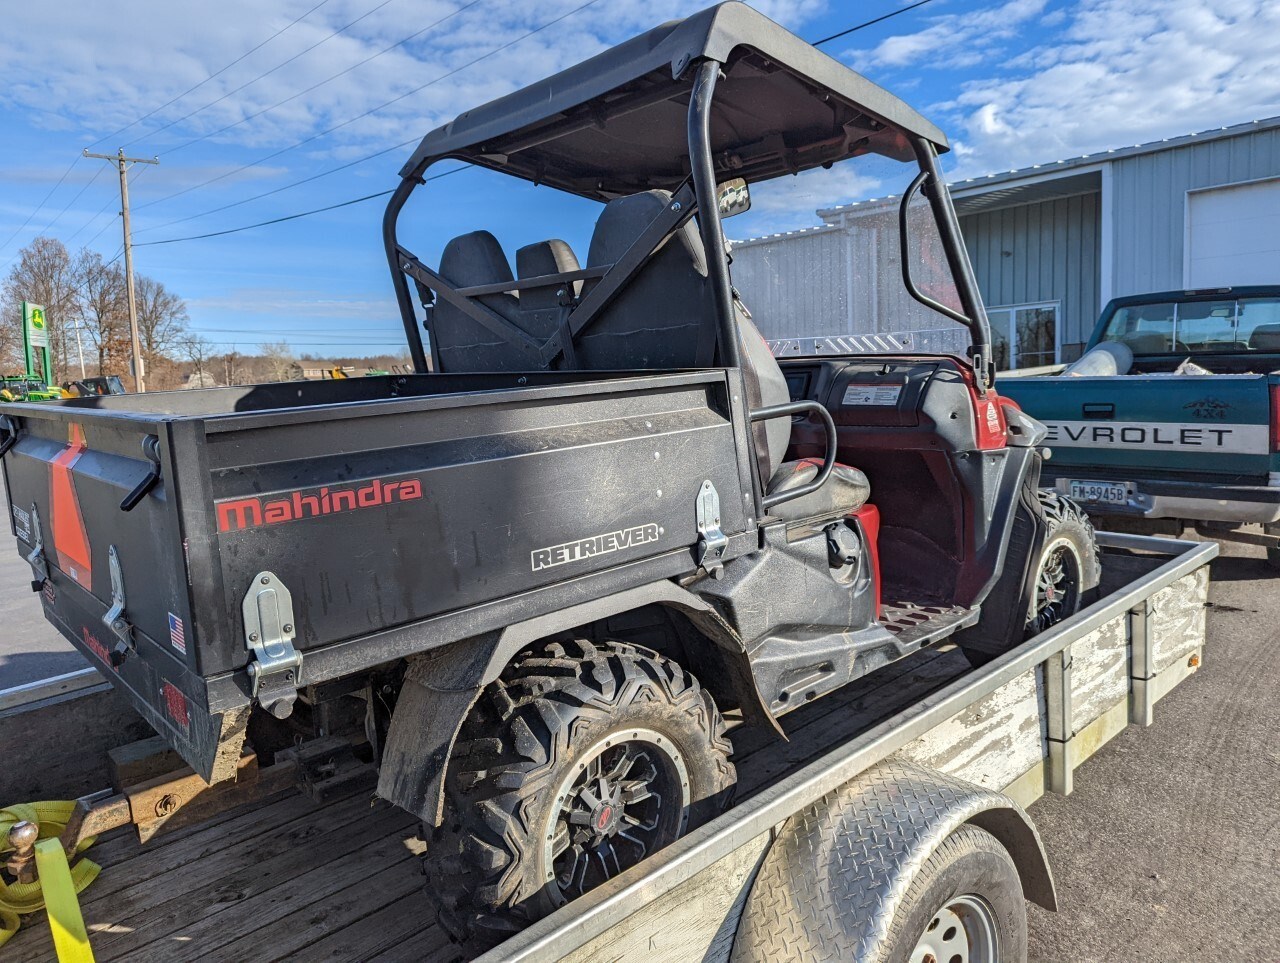 2018 Mahindra Retriever 1000 ATV For Sale